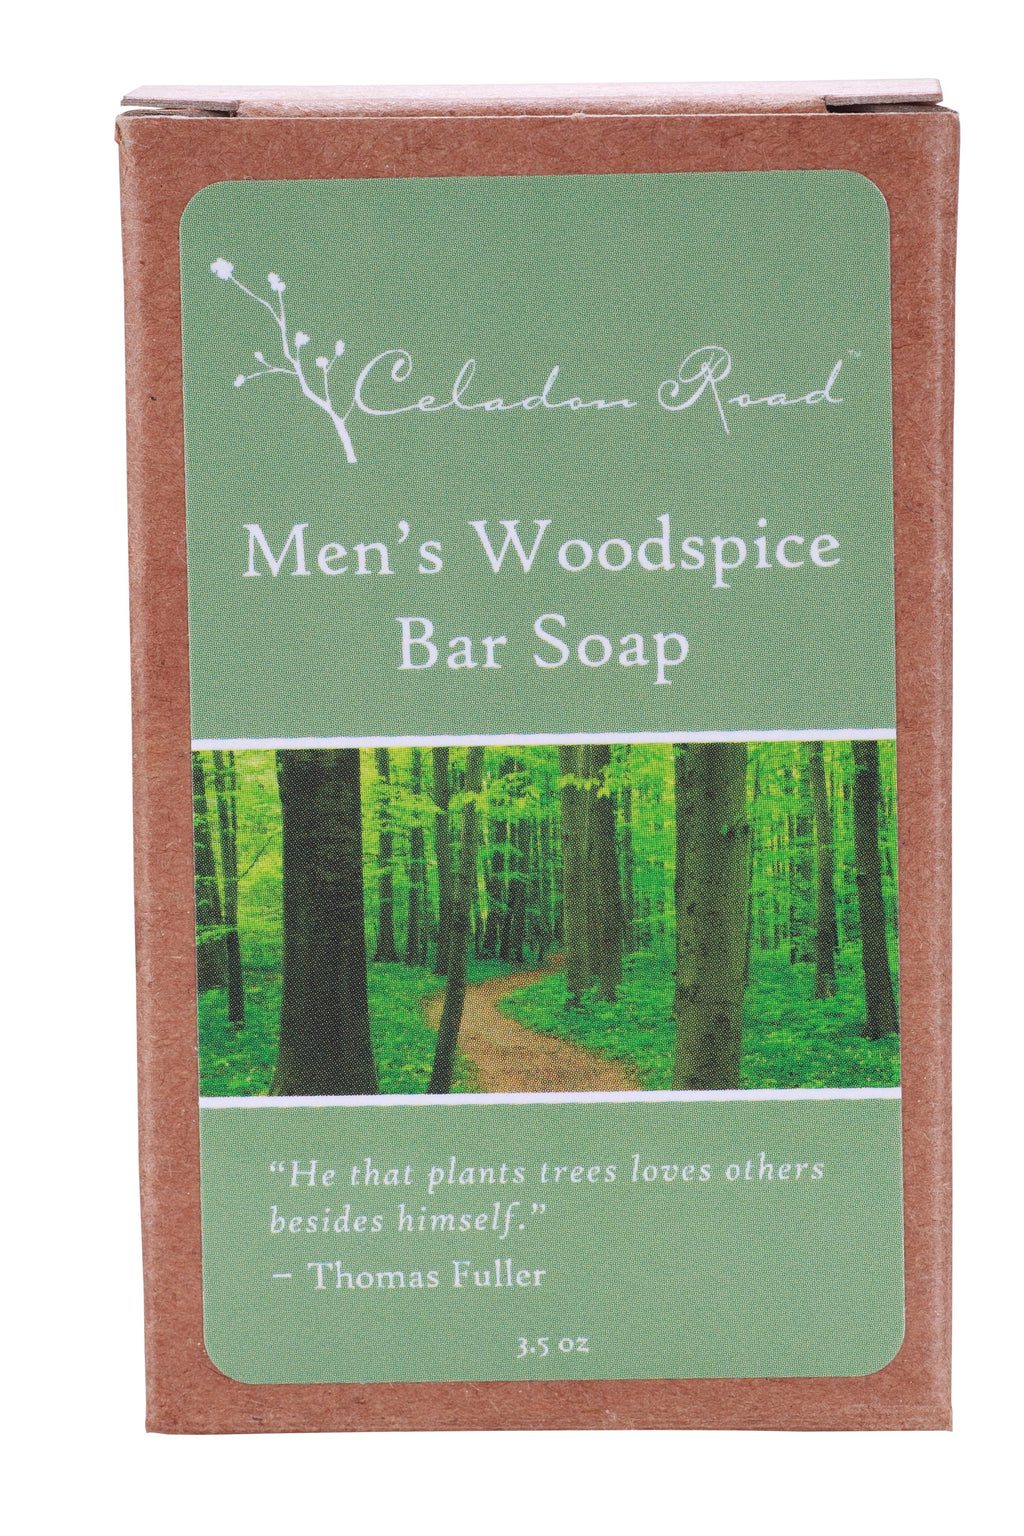 Men’s Woodspice Bar Soap- Celadon Road- www.celadonroad.com